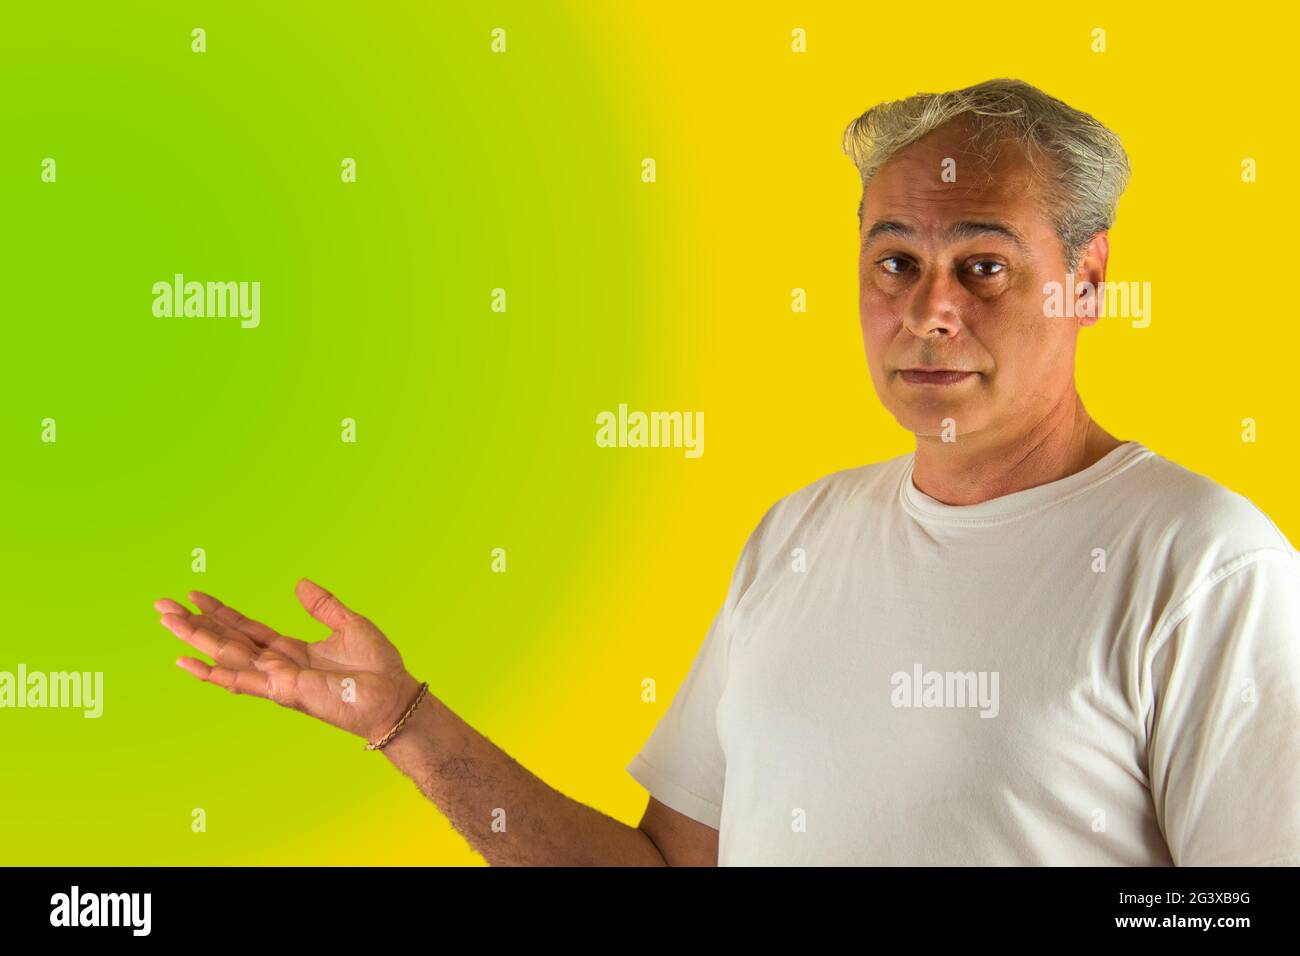 uomo dai capelli grigi che mostra qualcosa con la mano su uno sfondo verde e giallo Foto Stock